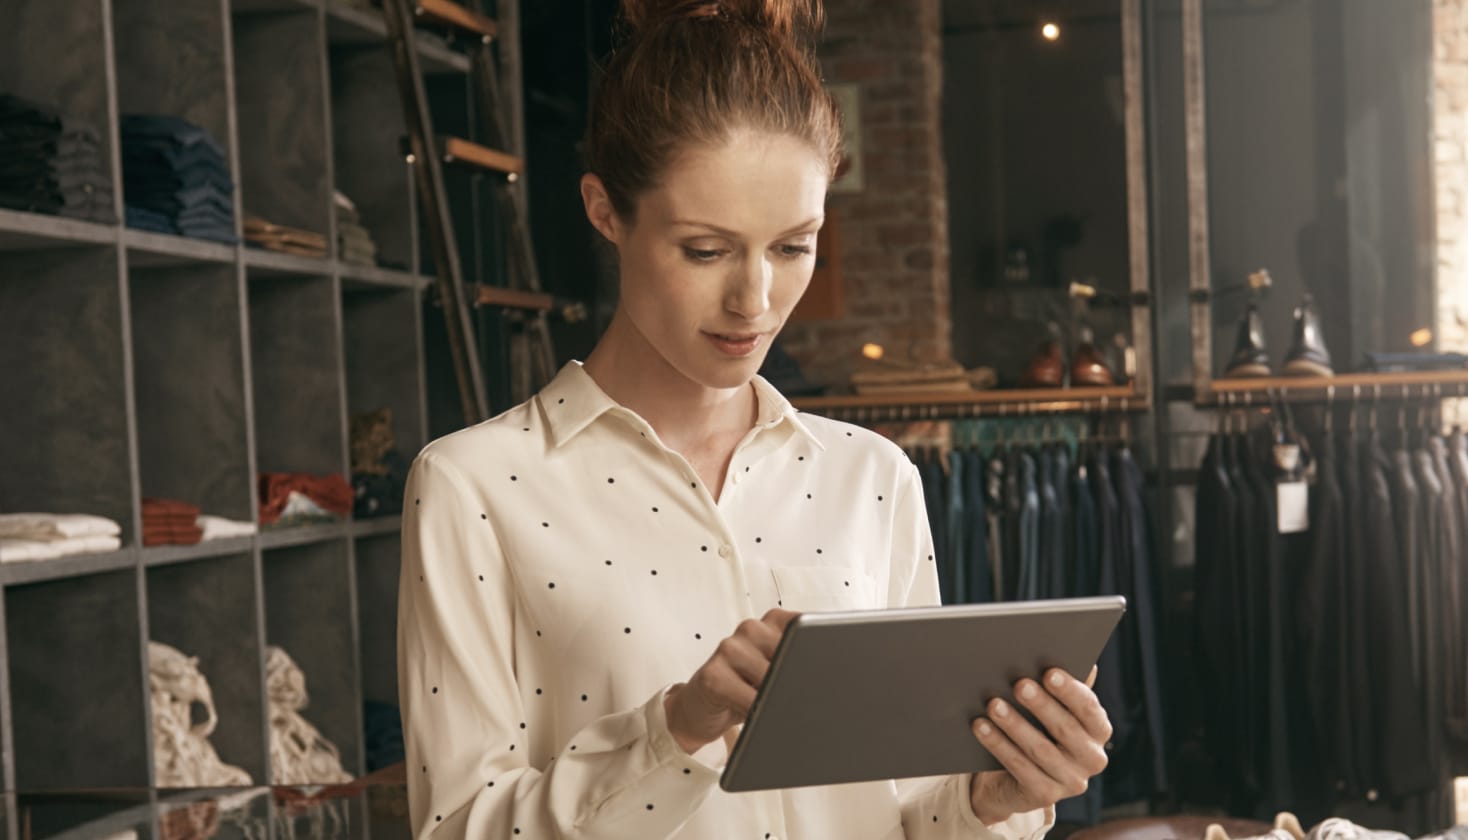 Una persona en una tienda de ropa, mirando una tableta, probablemente leyendo los comentarios de una encuesta para los clientes.